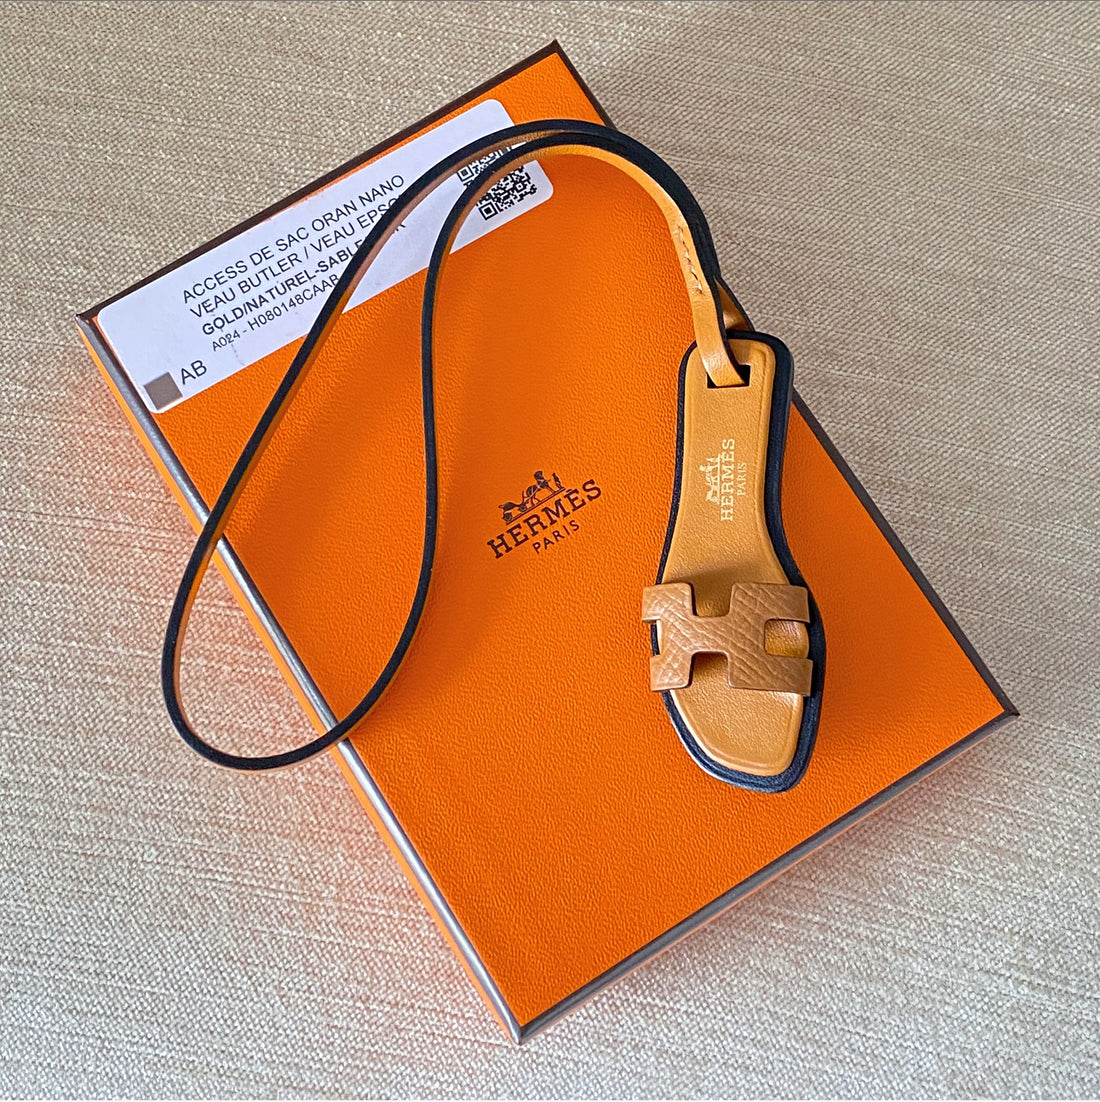 Hermes Oran Sandal Nano Bag Charm in Gold Brown – I MISS YOU VINTAGE